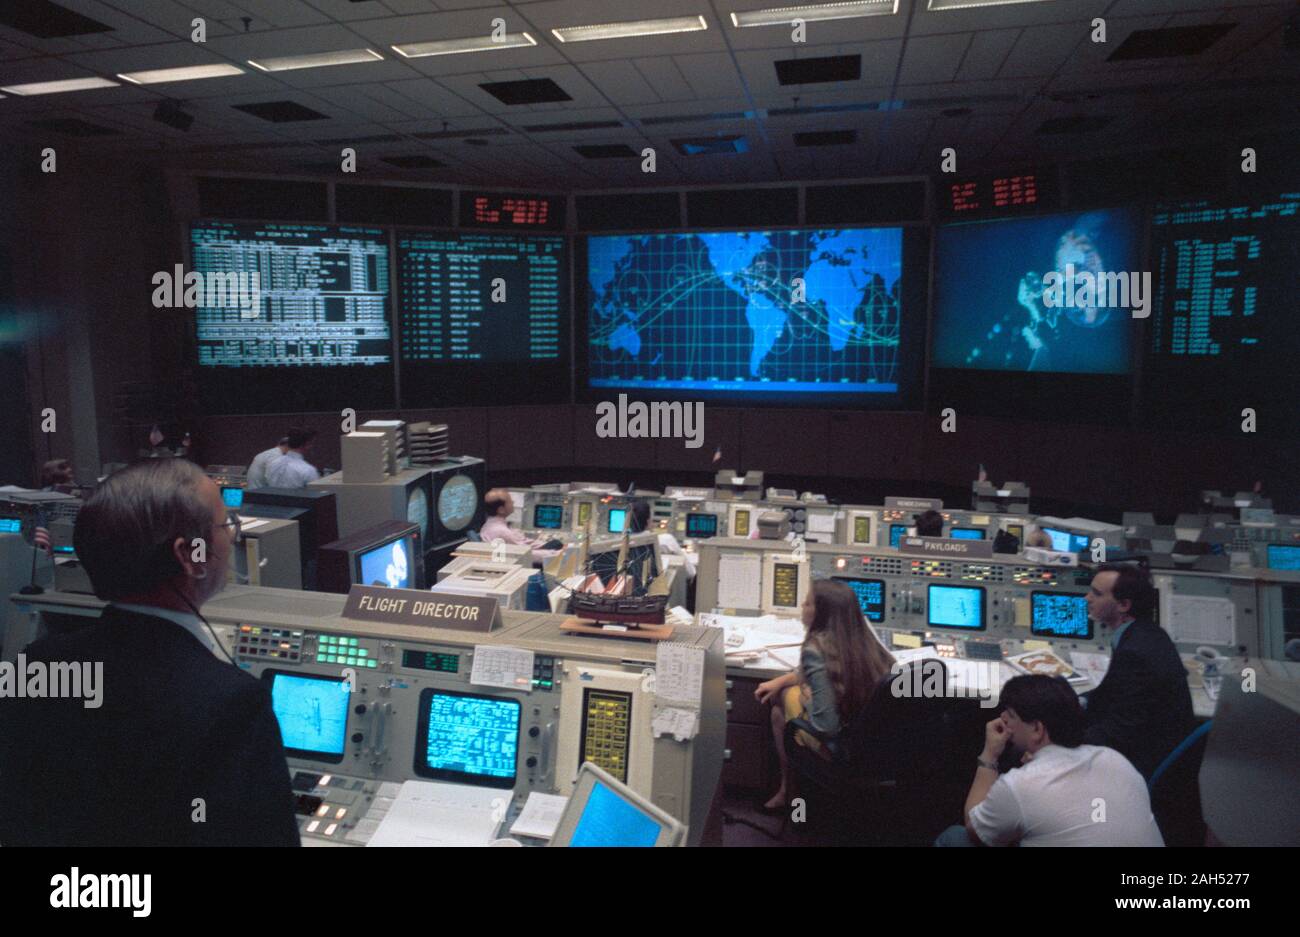 (11 Mai 1992) --- Im space shuttle Flight Control Room (FCR) in Mission Control Center in Houston, Flight Director Al Pennington überwacht den Fortschritt des ersten Außenbordeinsatz der Mission STS-49 Flug. Ein Modell des HM Bark Endeavour, Namensgeber für das Space Shuttle derzeit seinen Erstflug, schmückt die Konsole. Stockfoto